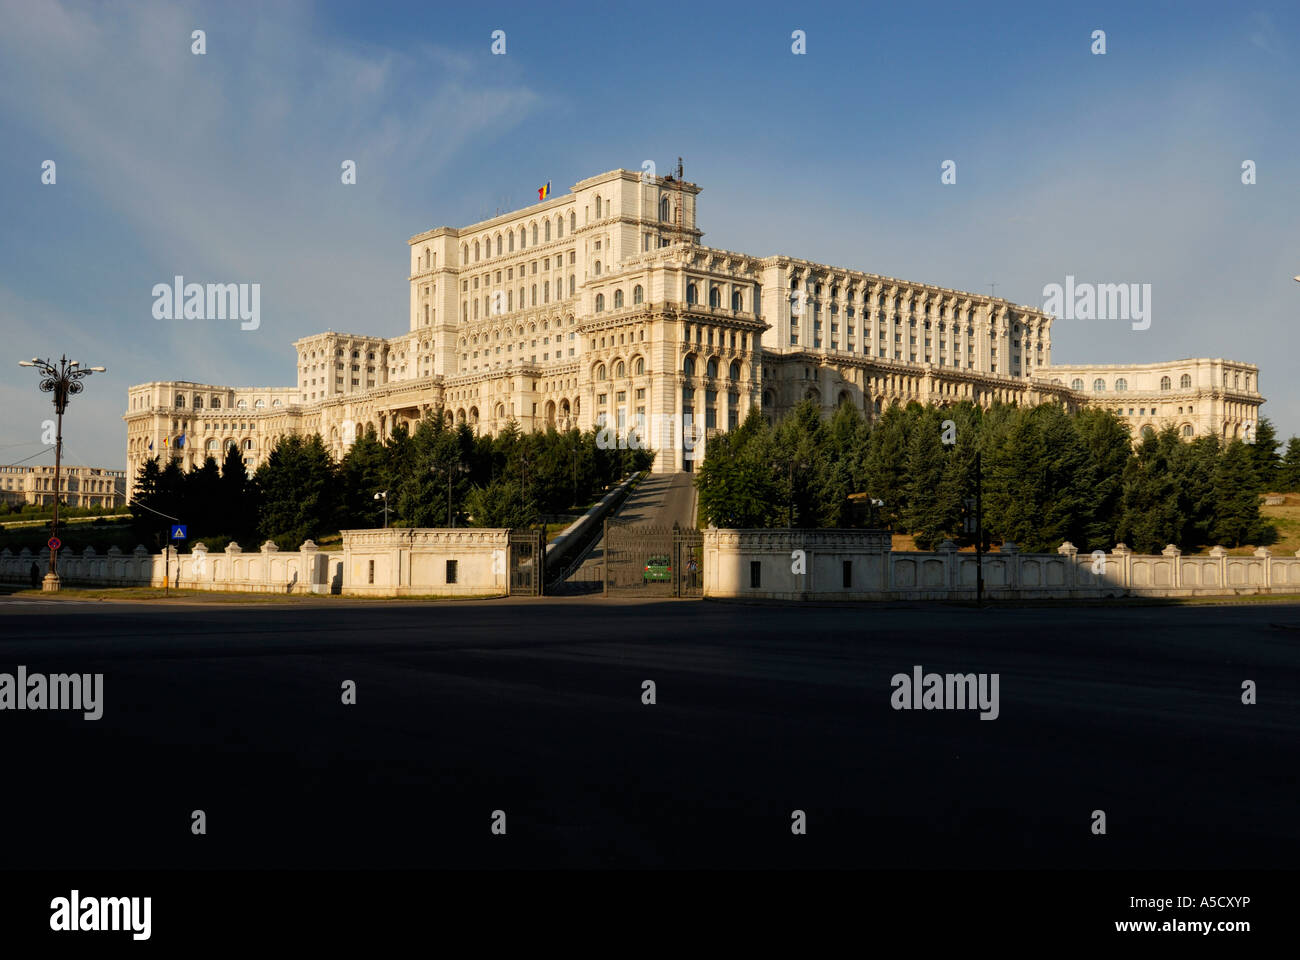 Palace of the Parliament, former House of the People (Casa Poporului - Palatul Parlamentului), Bucharest, Romania Stock Photo